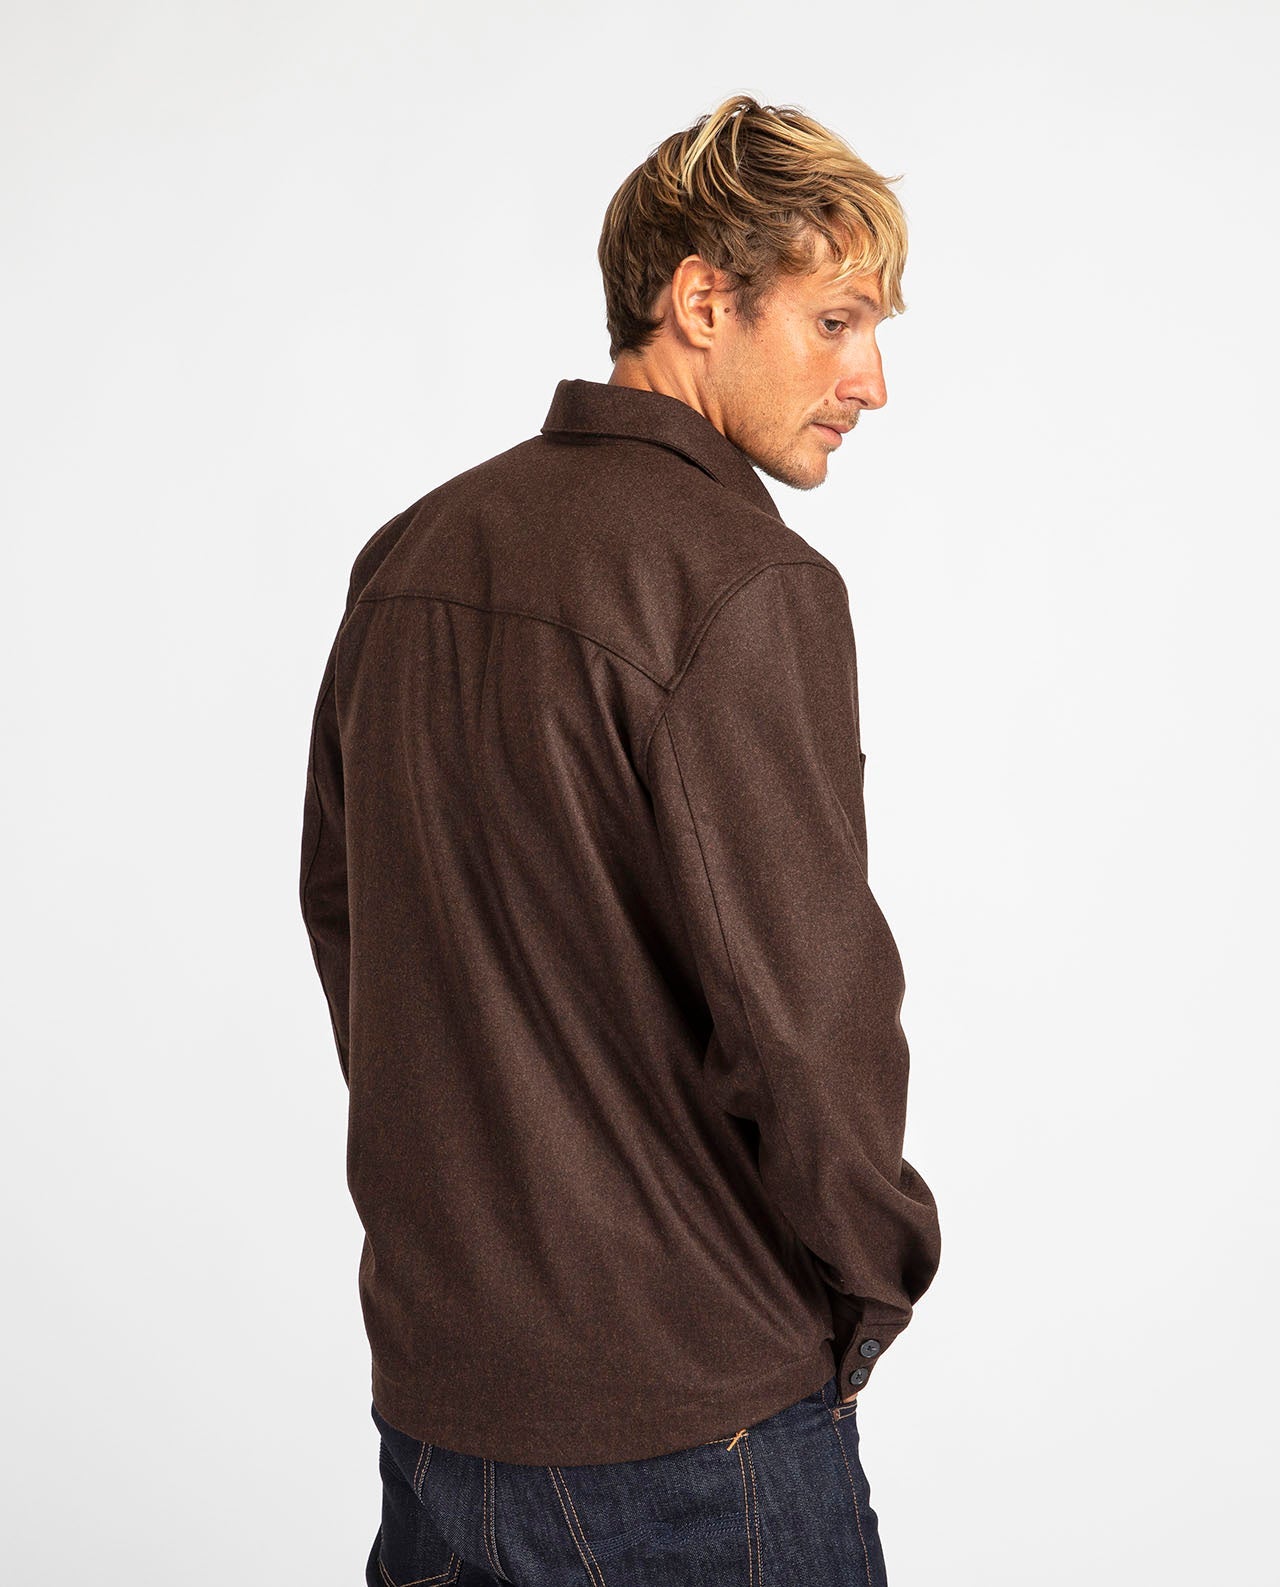 marché commun noyoco sur chemise laine vierge homme éco-responsable éthique fabriquée en Europe